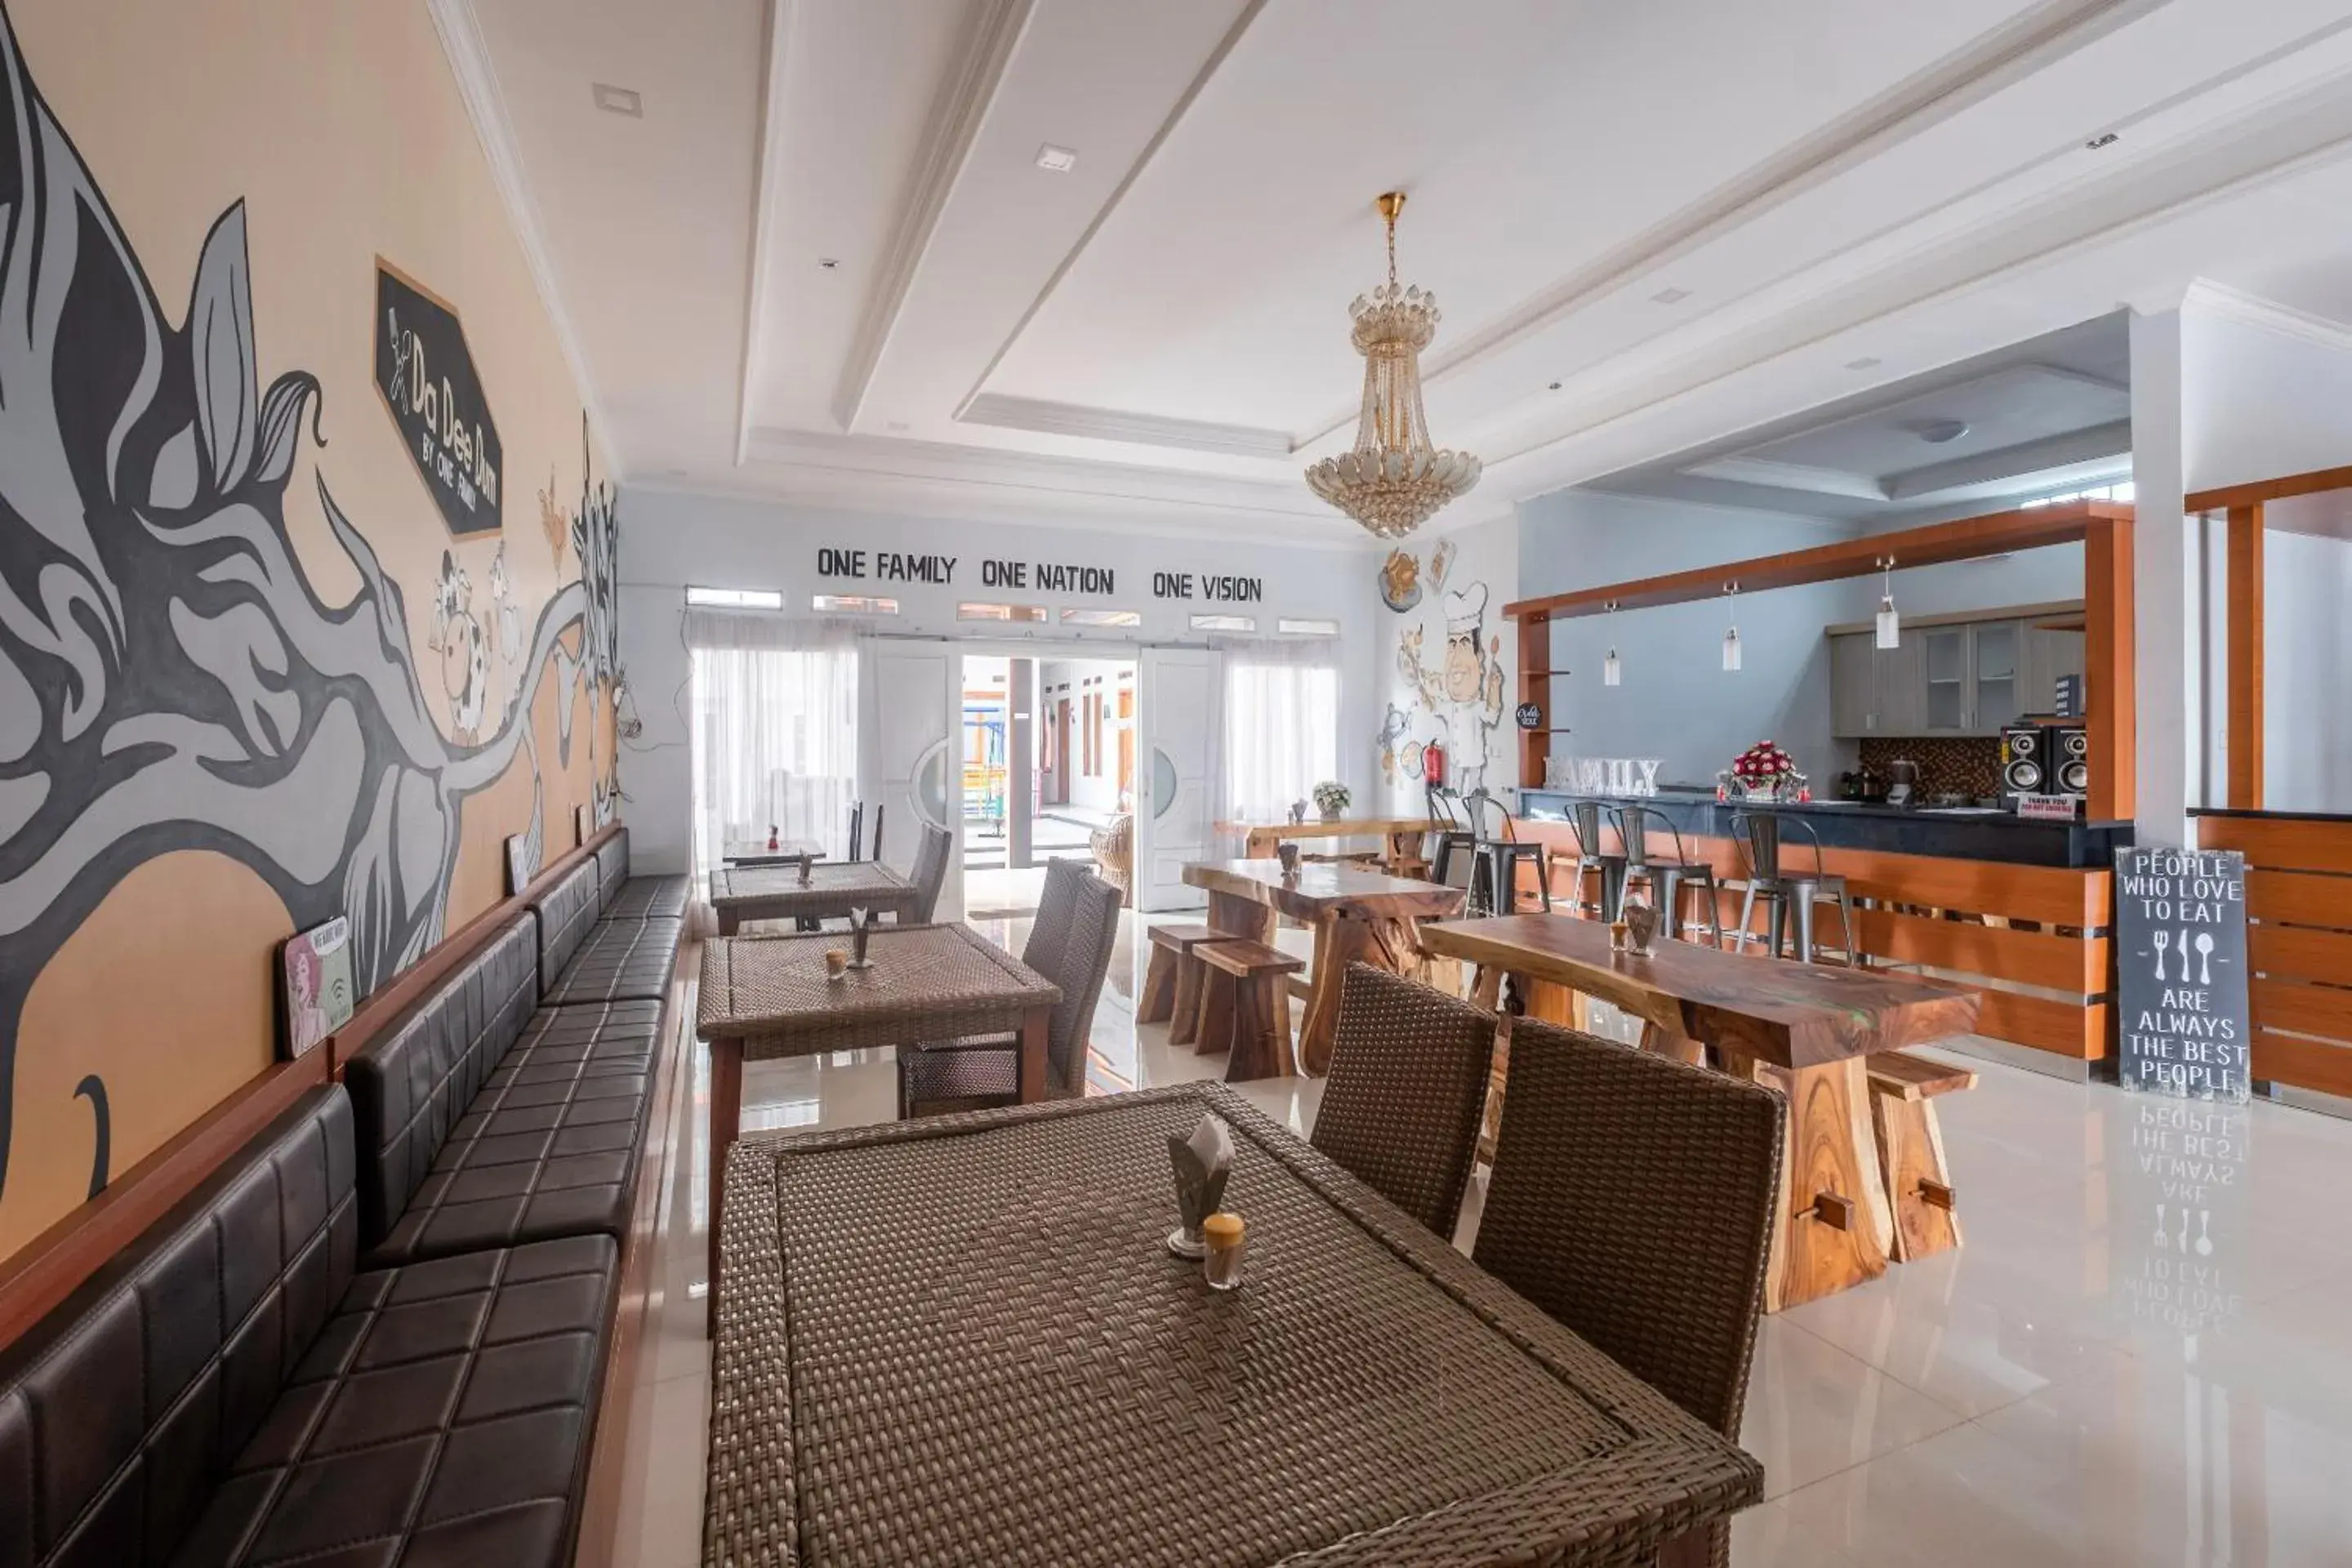 Restaurant/Places to Eat in Urbanview Hotel Maribaya Lembang Bandung